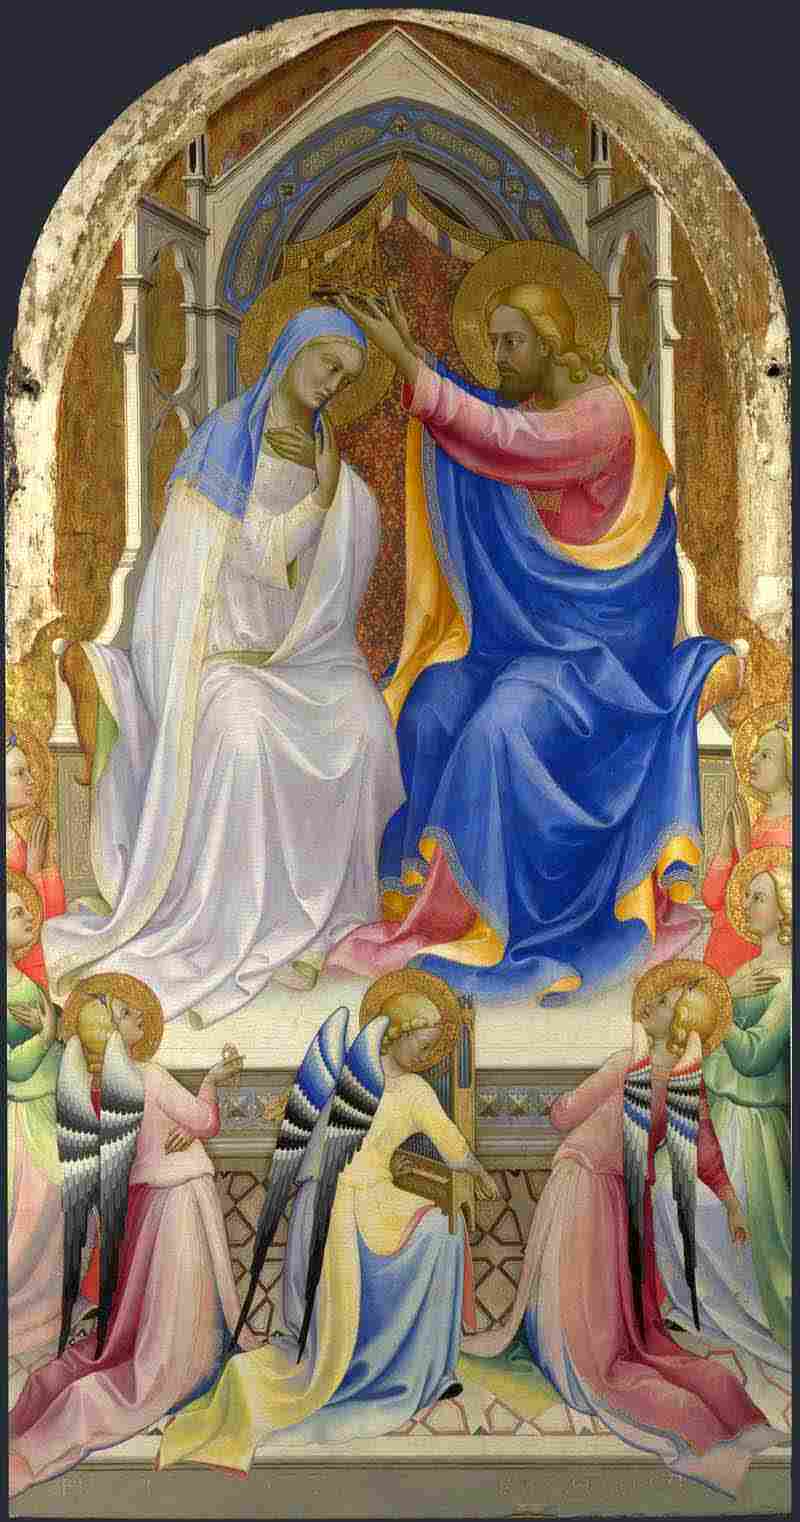 The Coronation of the Virgin. Lorenzo Monaco